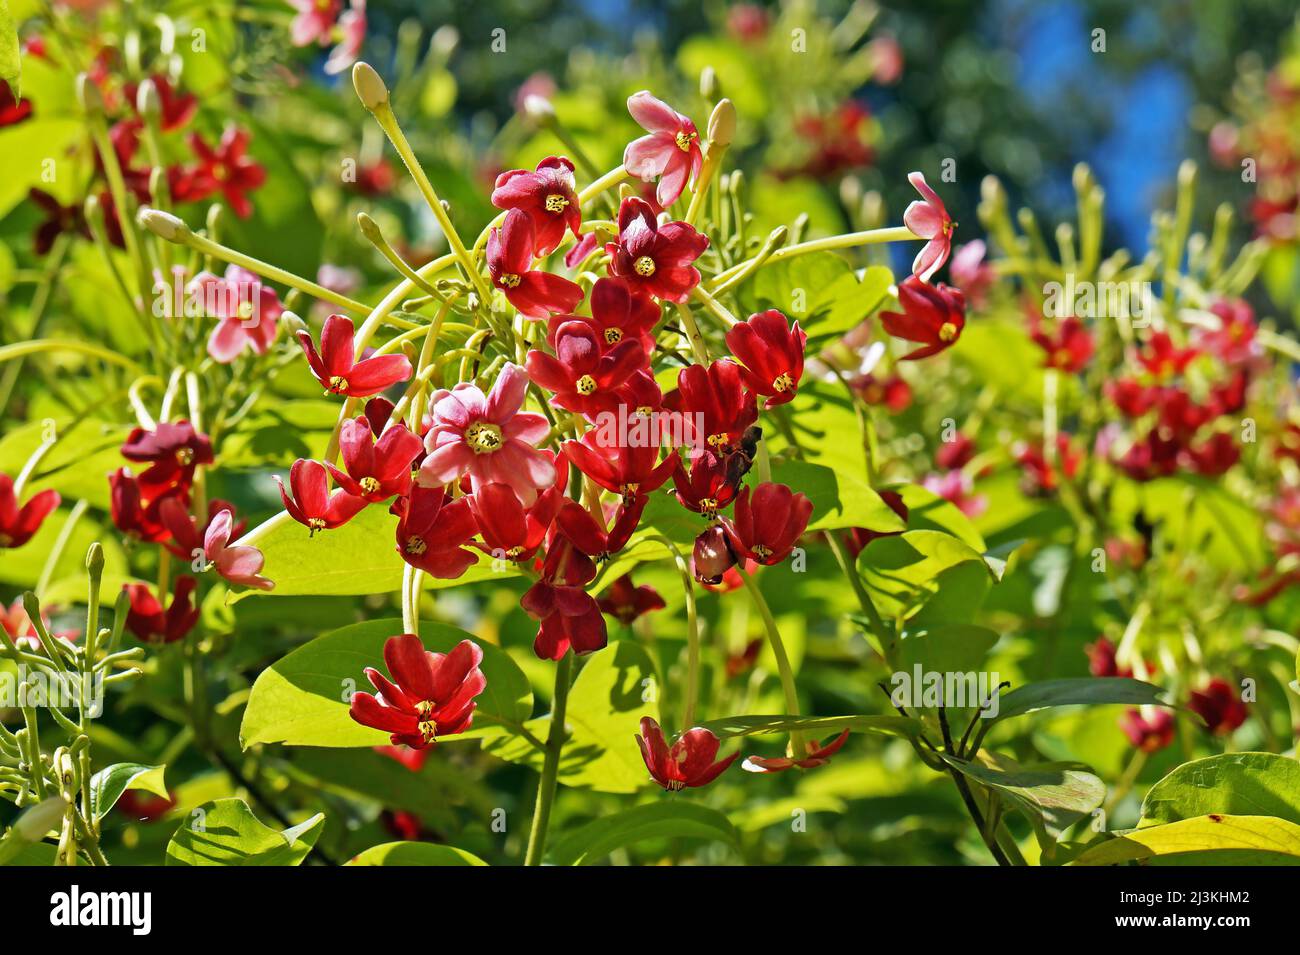 Rangoon creeper flowers (Quisqualis indica or Combretum indicum) Stock Photo